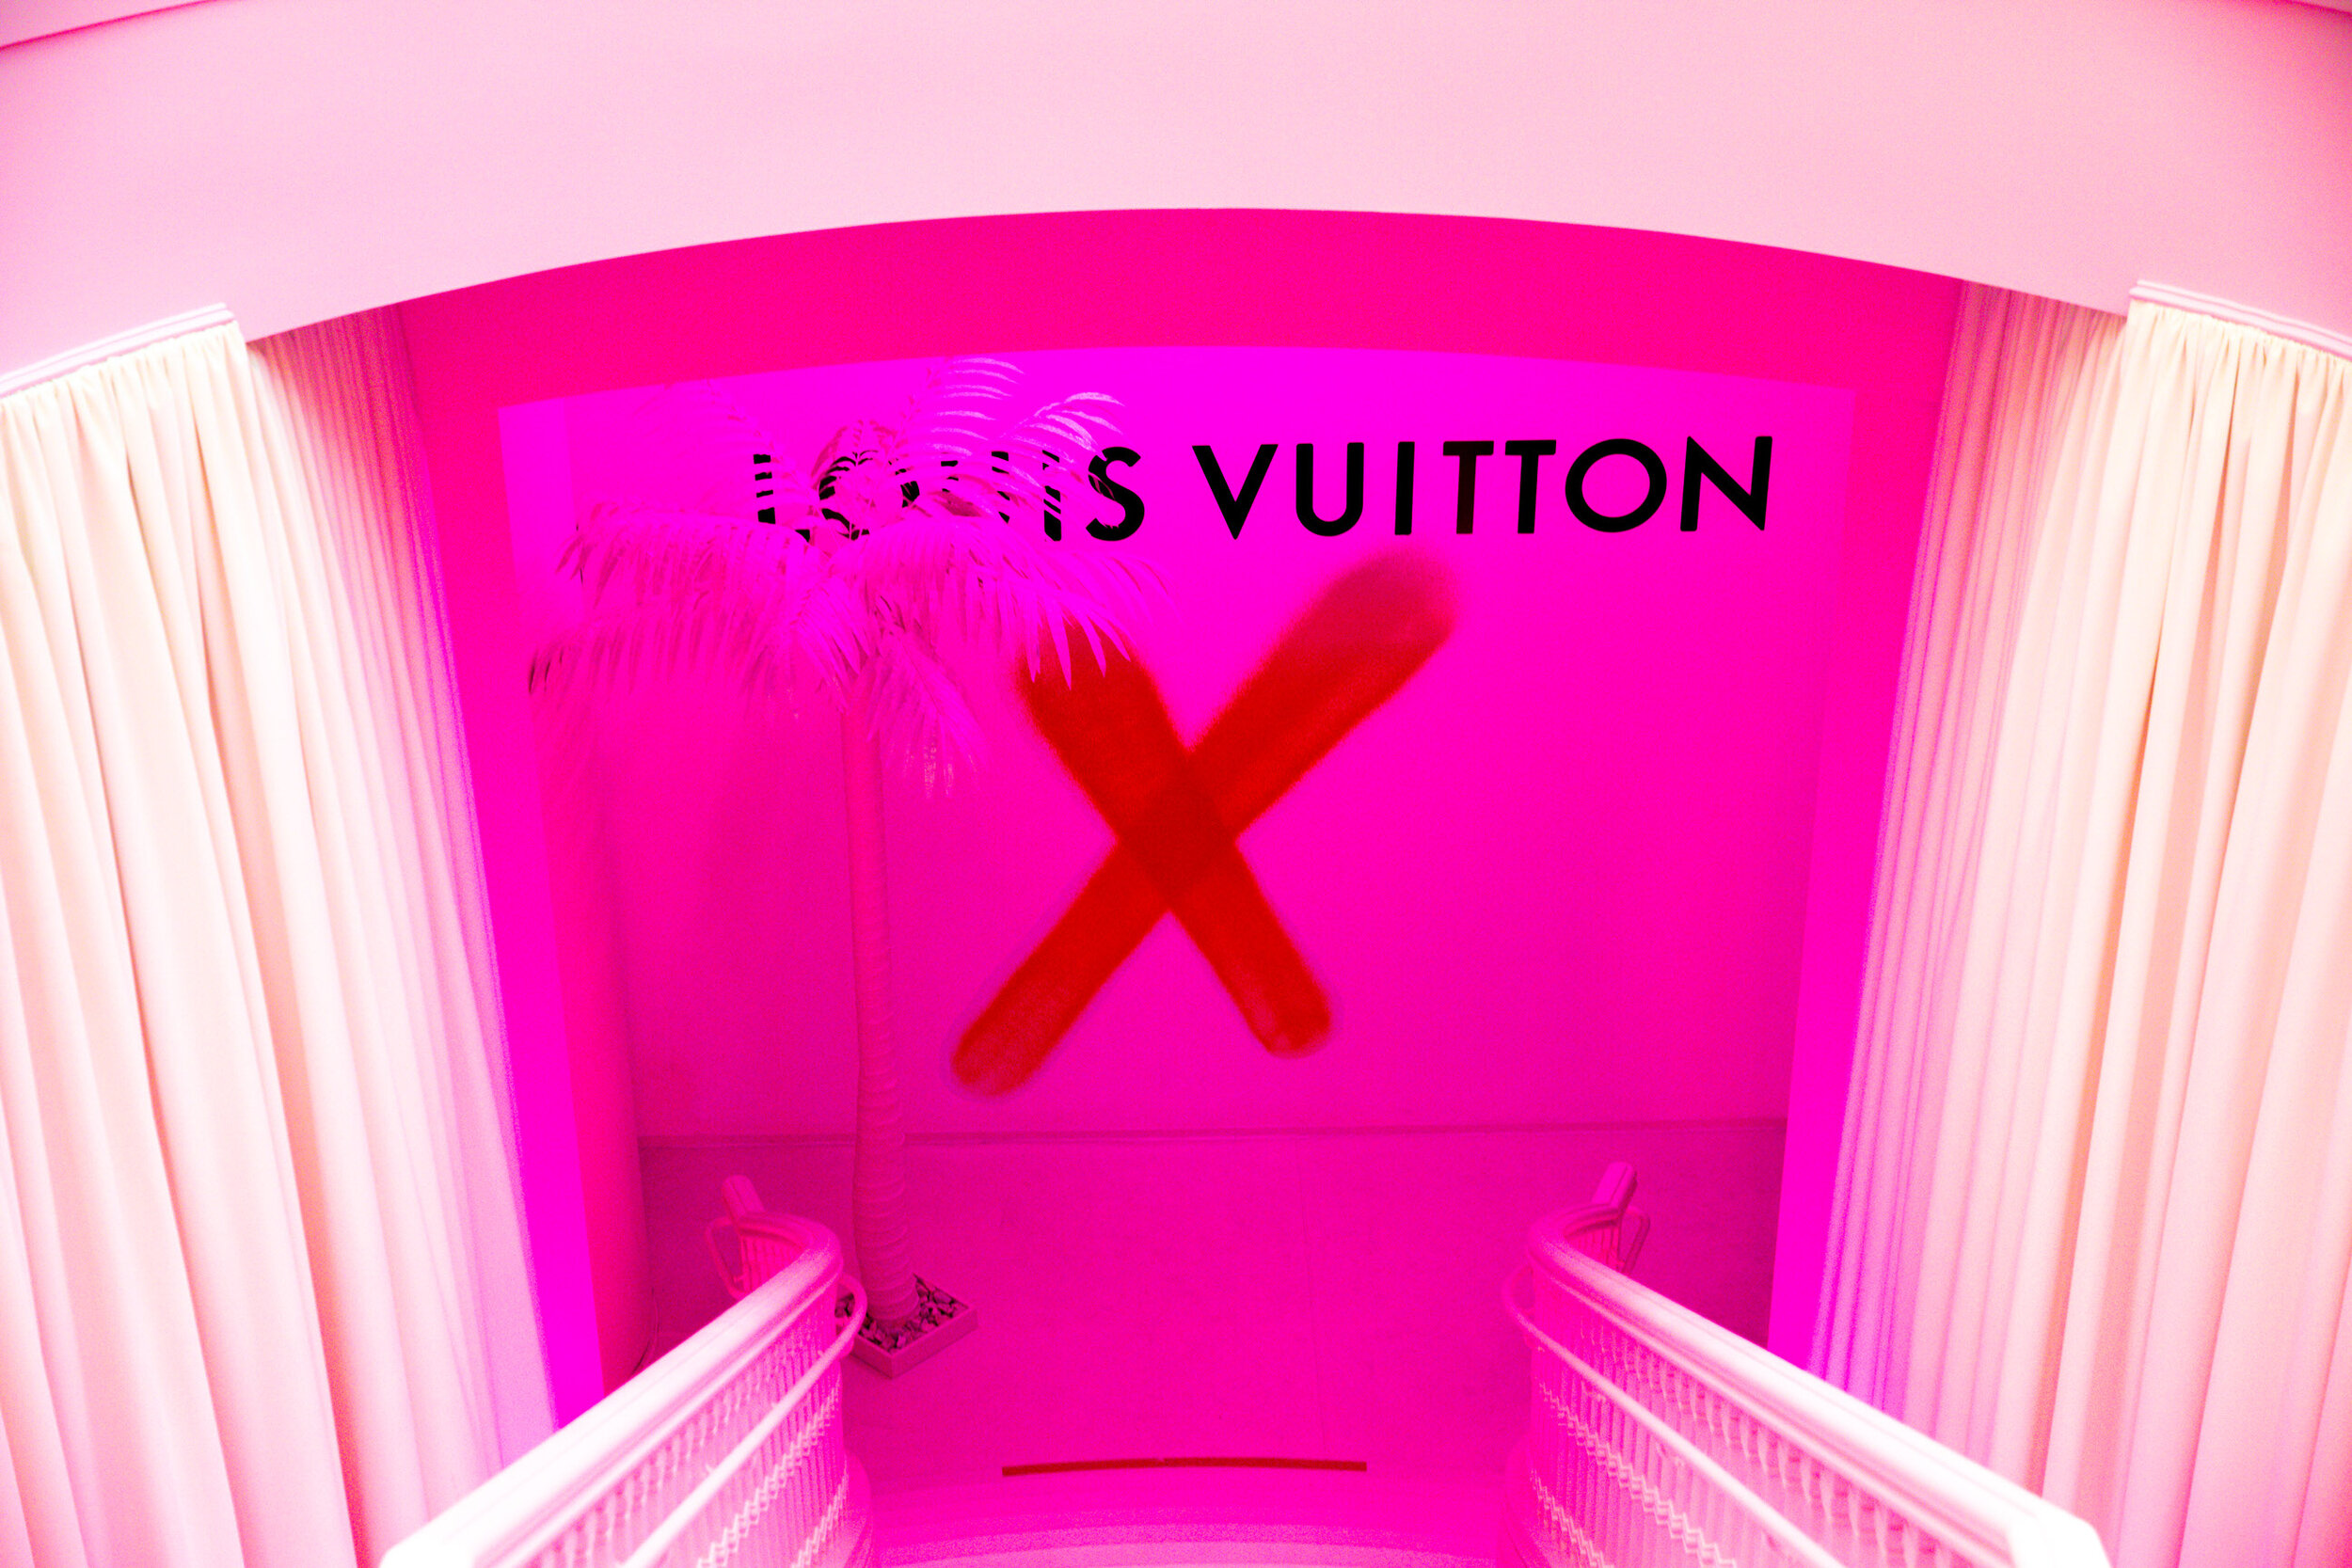 Louis Vuitton — grant spanier